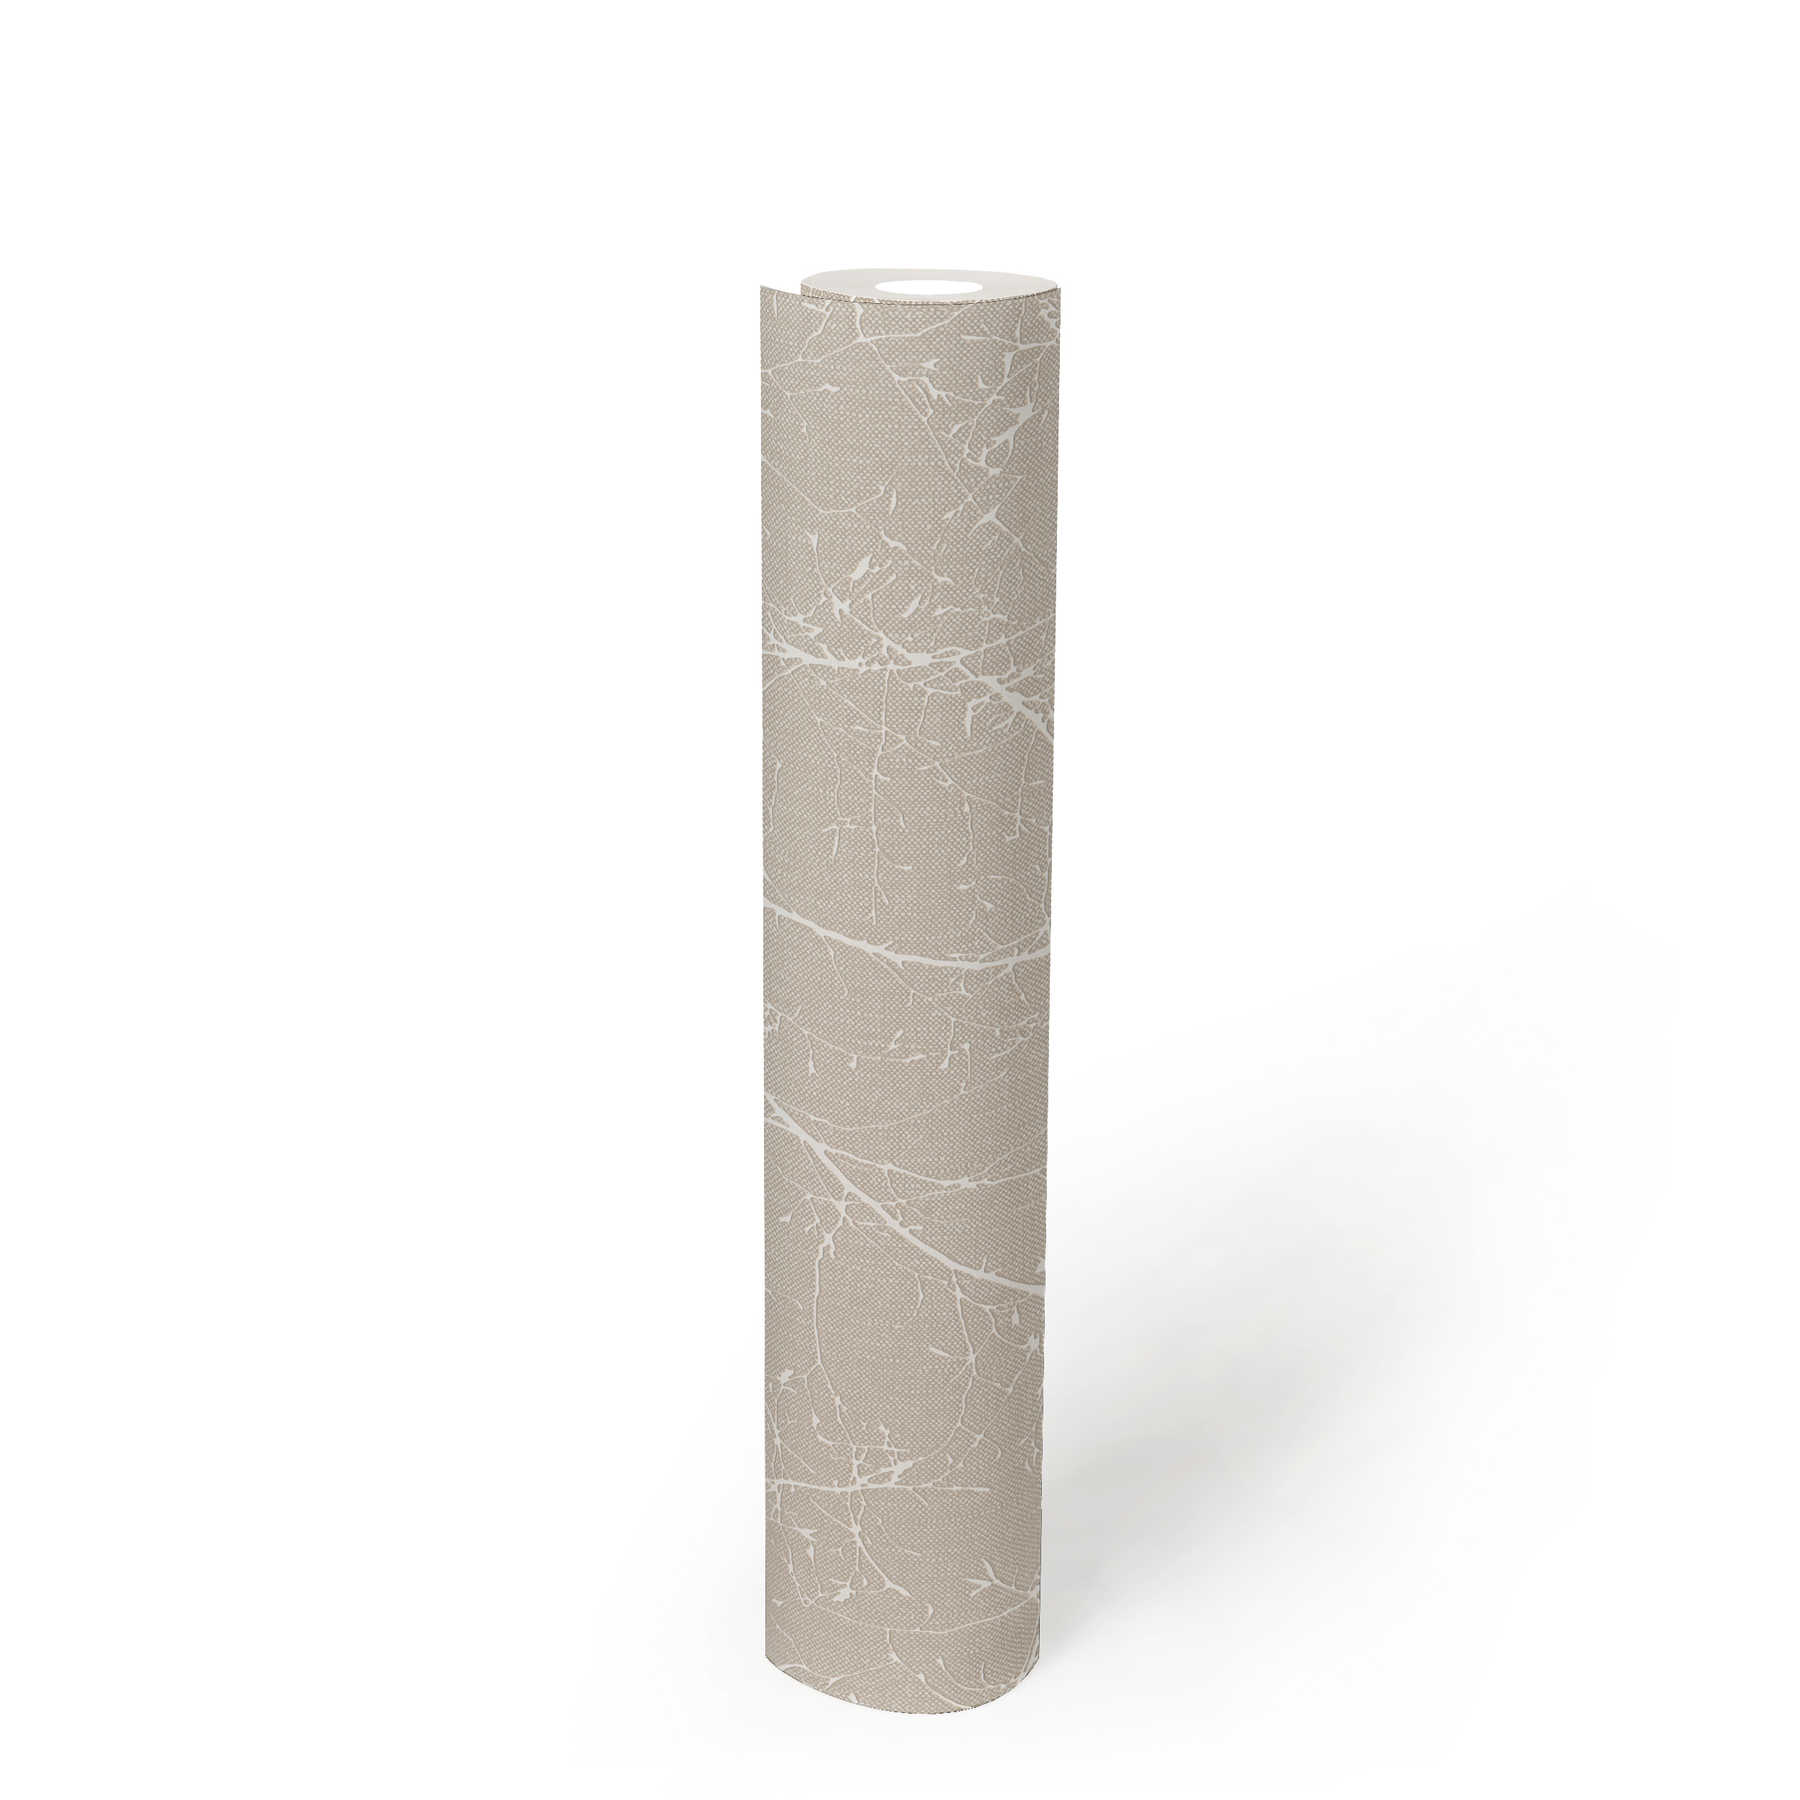             Vliestapete mit Leinenoptik und natürlichem Motiv aus Blüten und Zweigen – Beige, Weiß
        